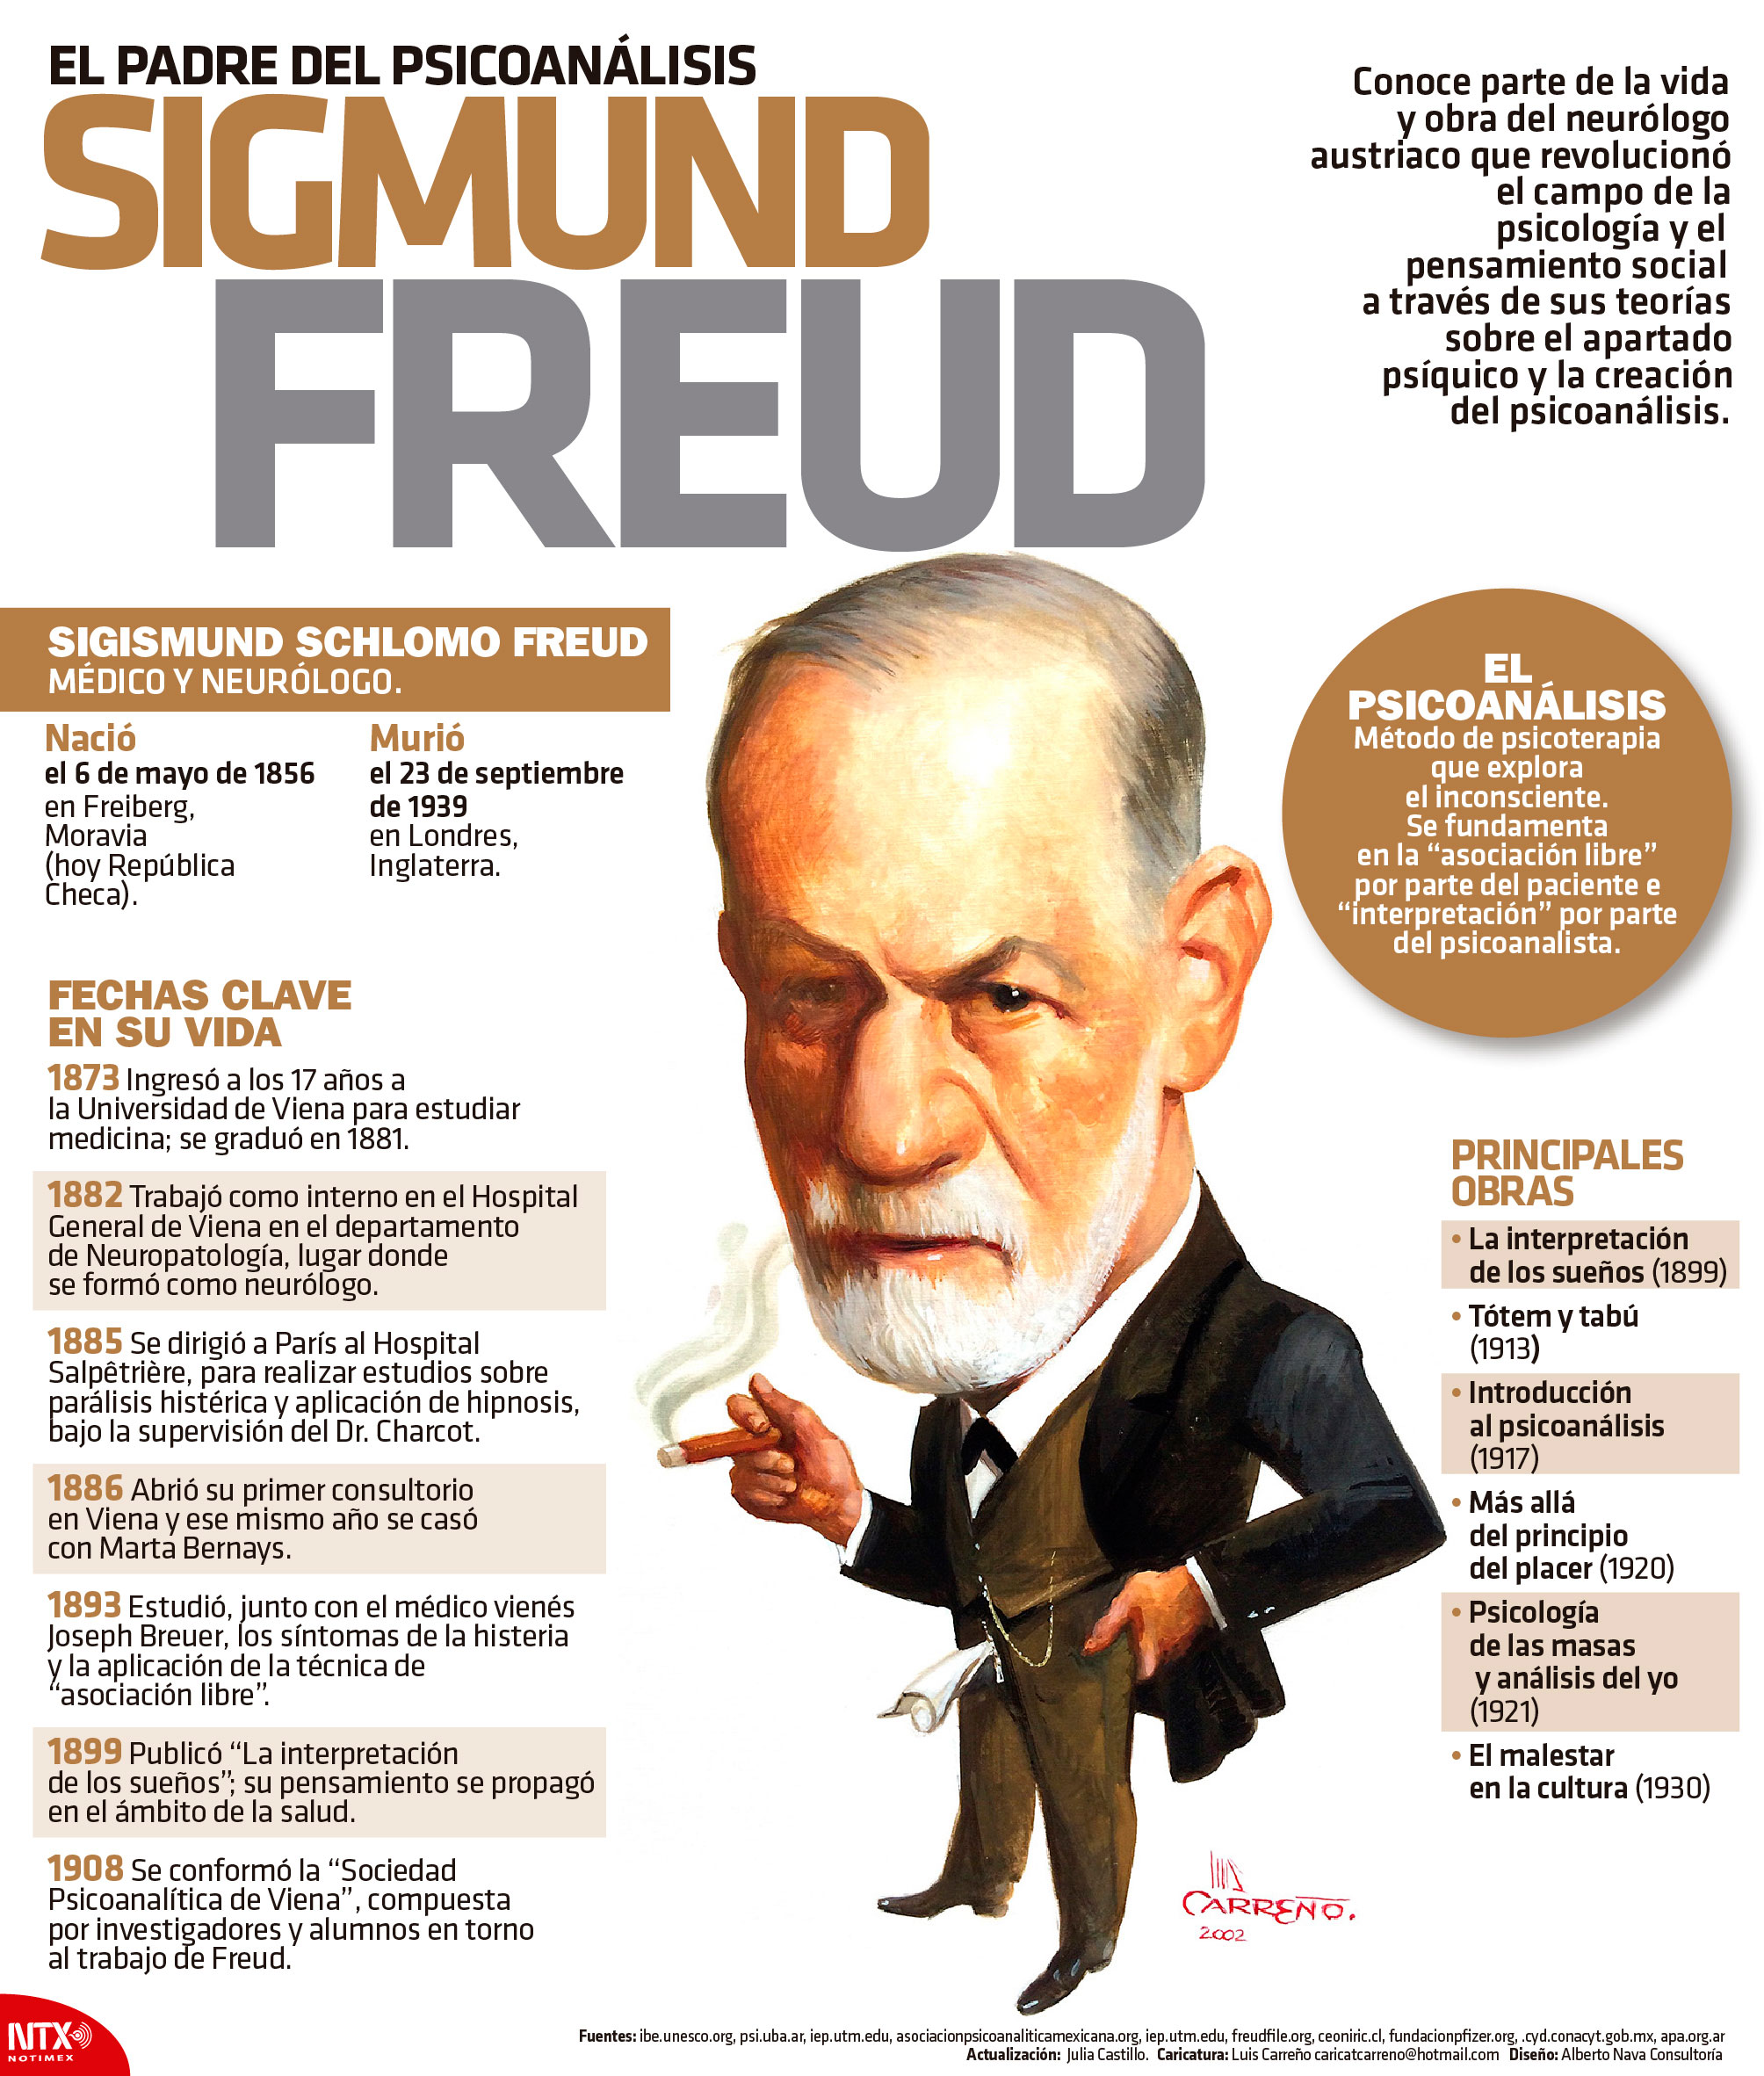 El padre del psicoanlisis Sigmund Freud